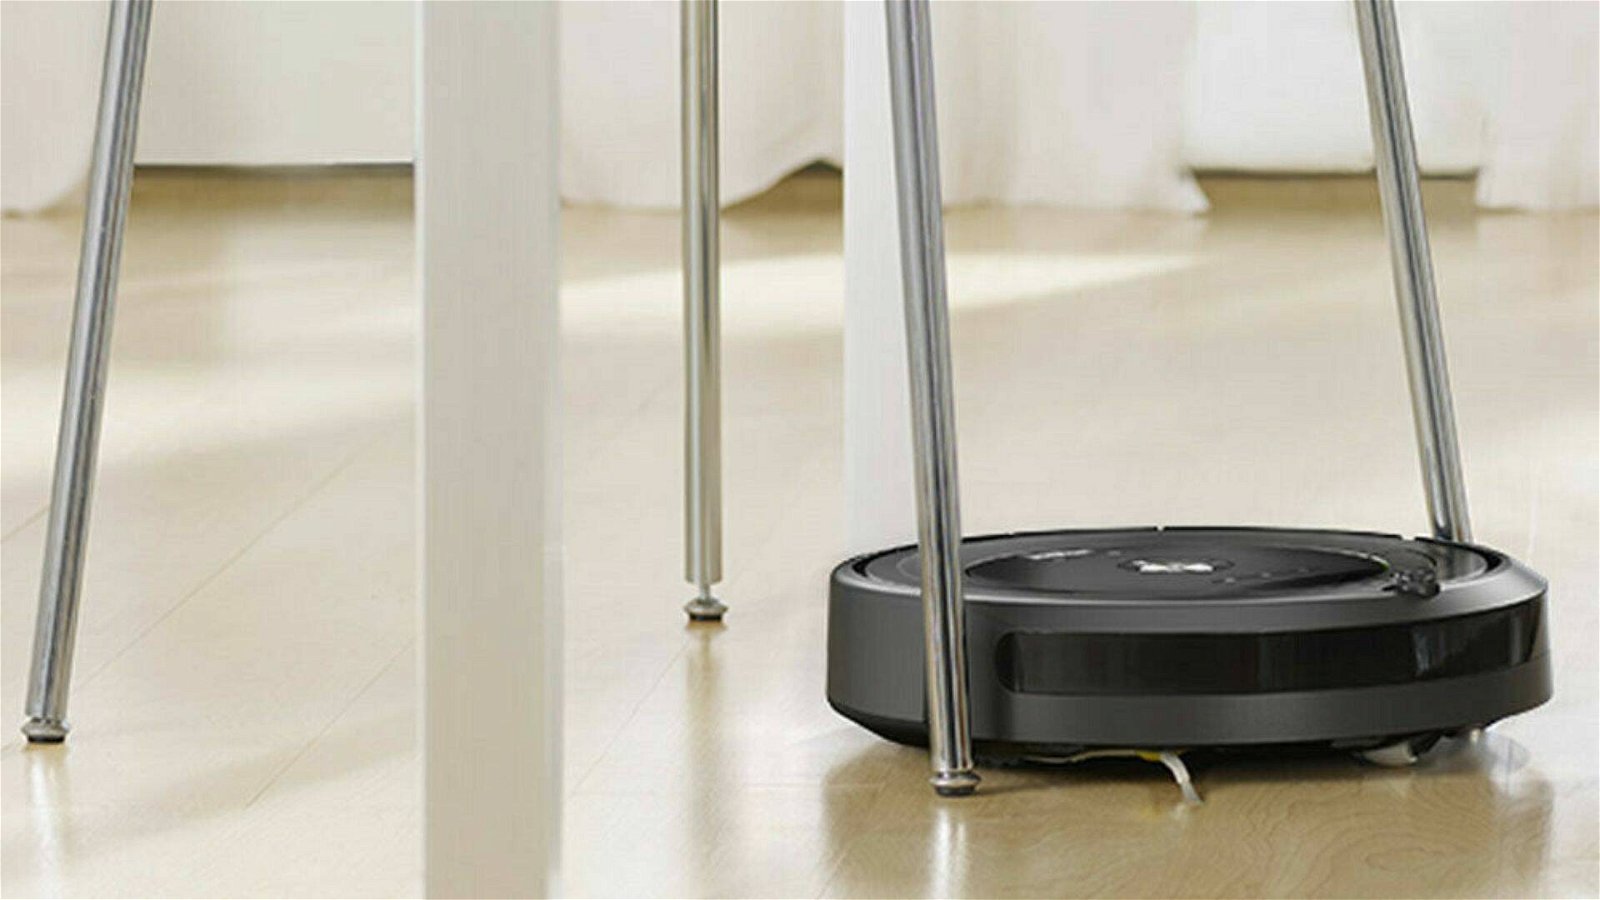 Immagine di iRobot Roomba 606 a meno di 200€ nelle offerte del giorno eBay